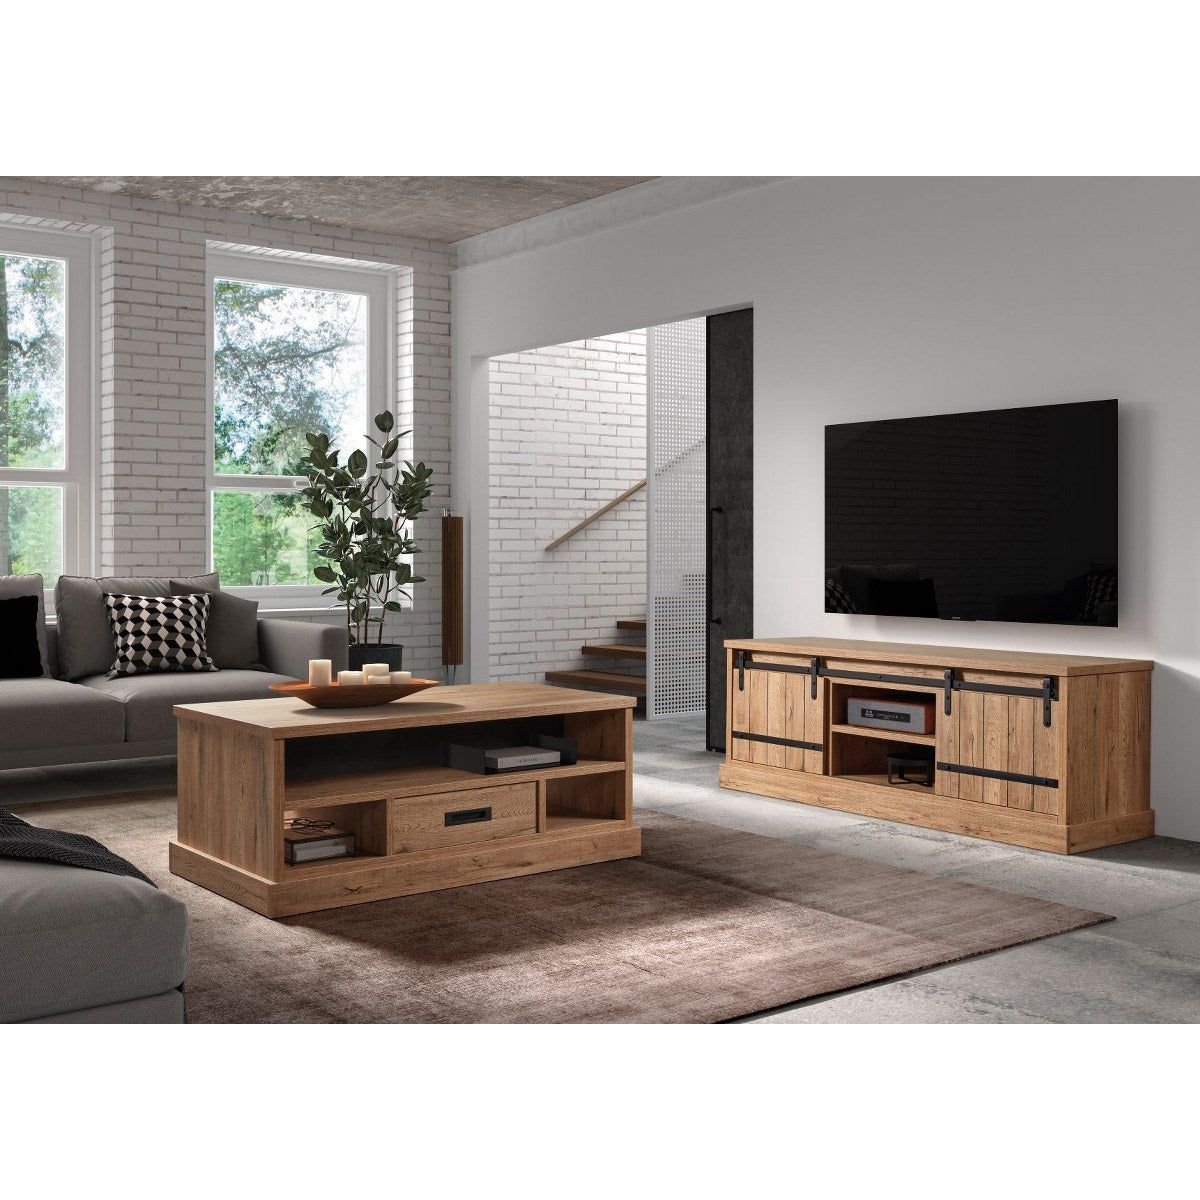 TV cabinet | Furniture series Albert | brown, natural, black | 164